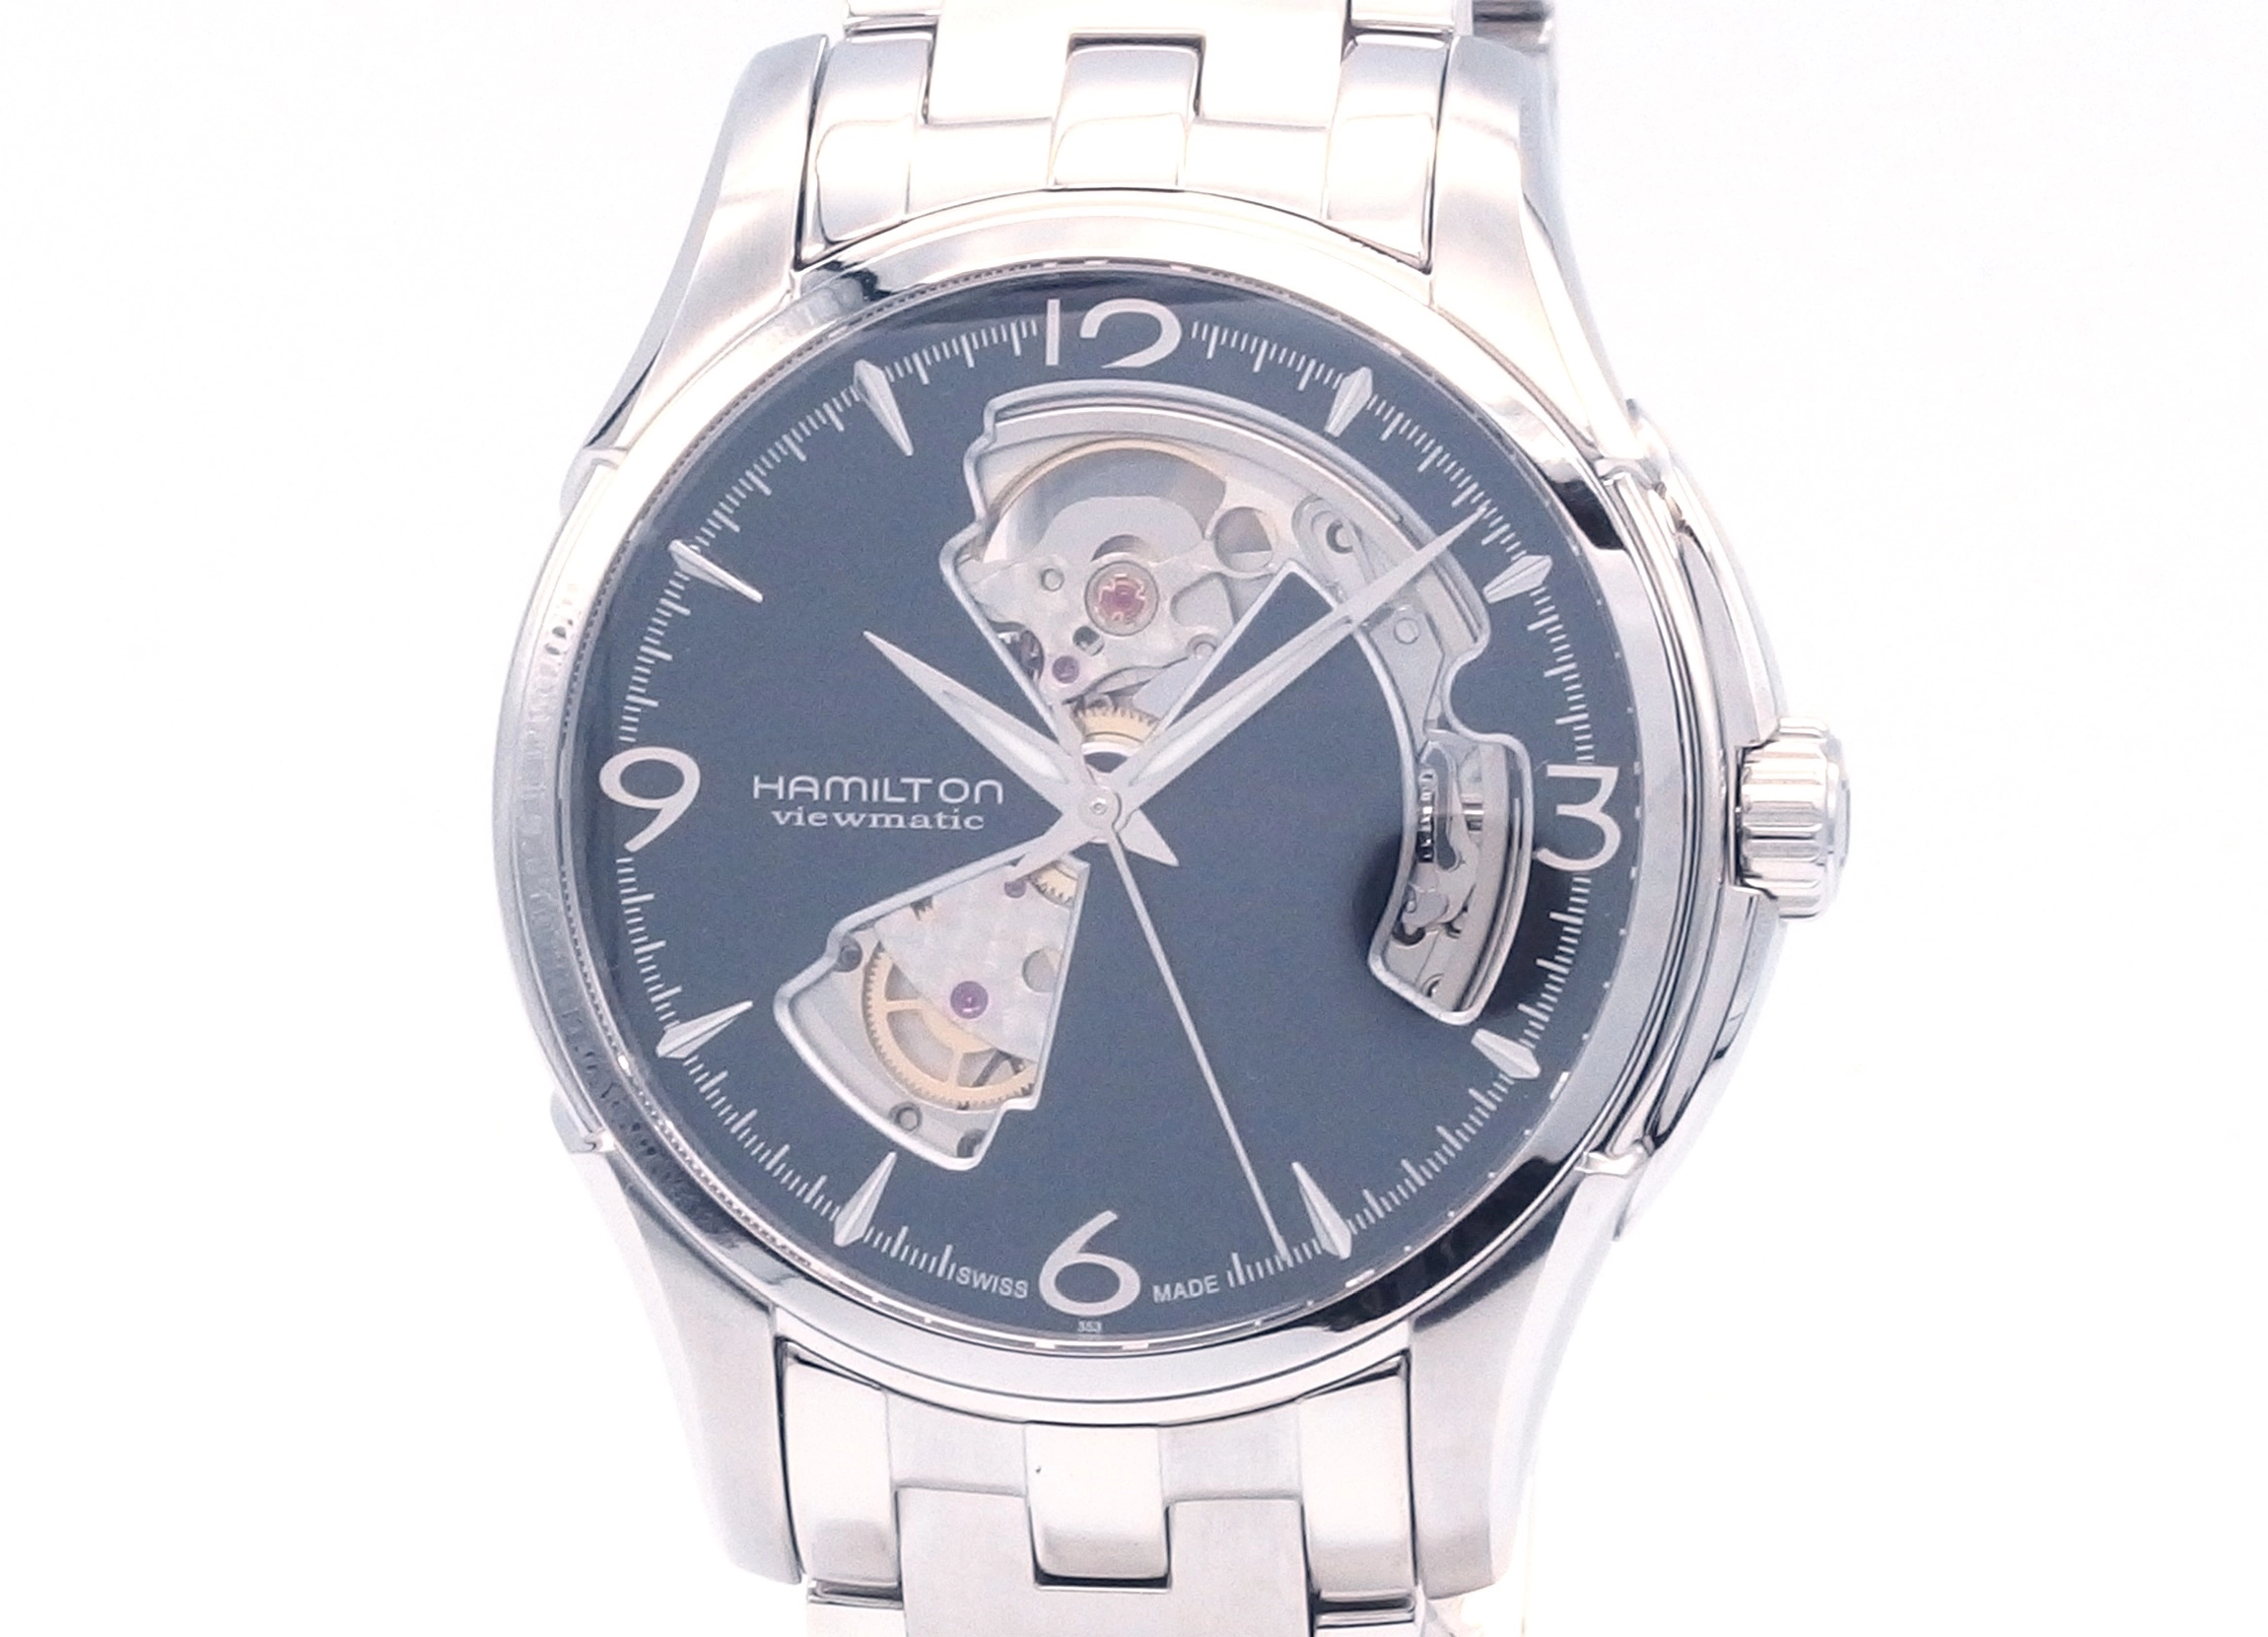 ハミルトン ジャズマスター H325651 腕時計 メンズ A03126